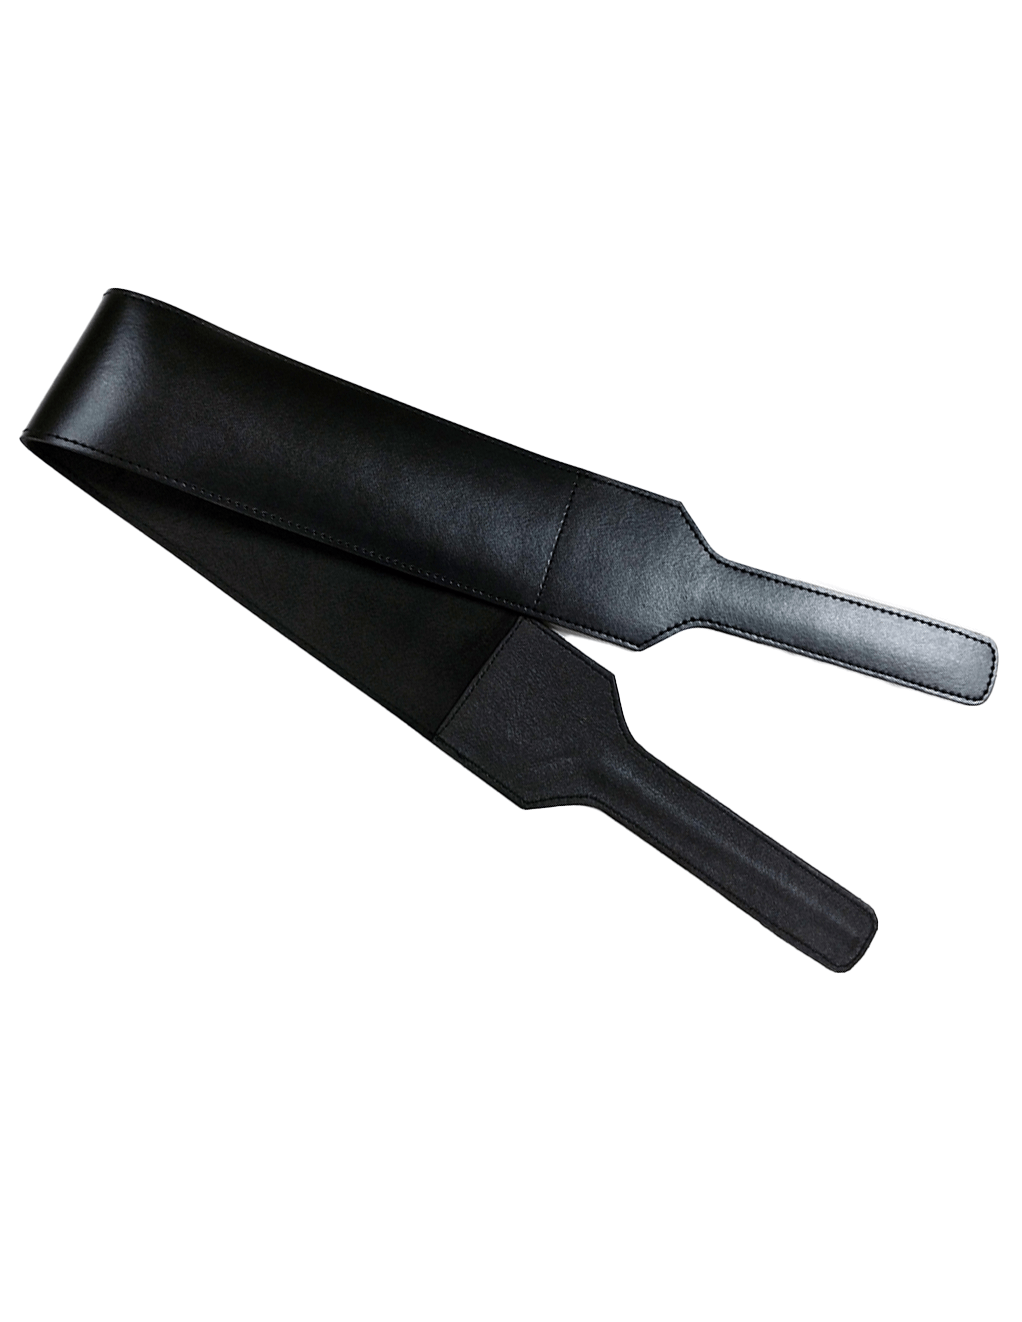 Rouge Leather Folded Open Paddle - Black - Main